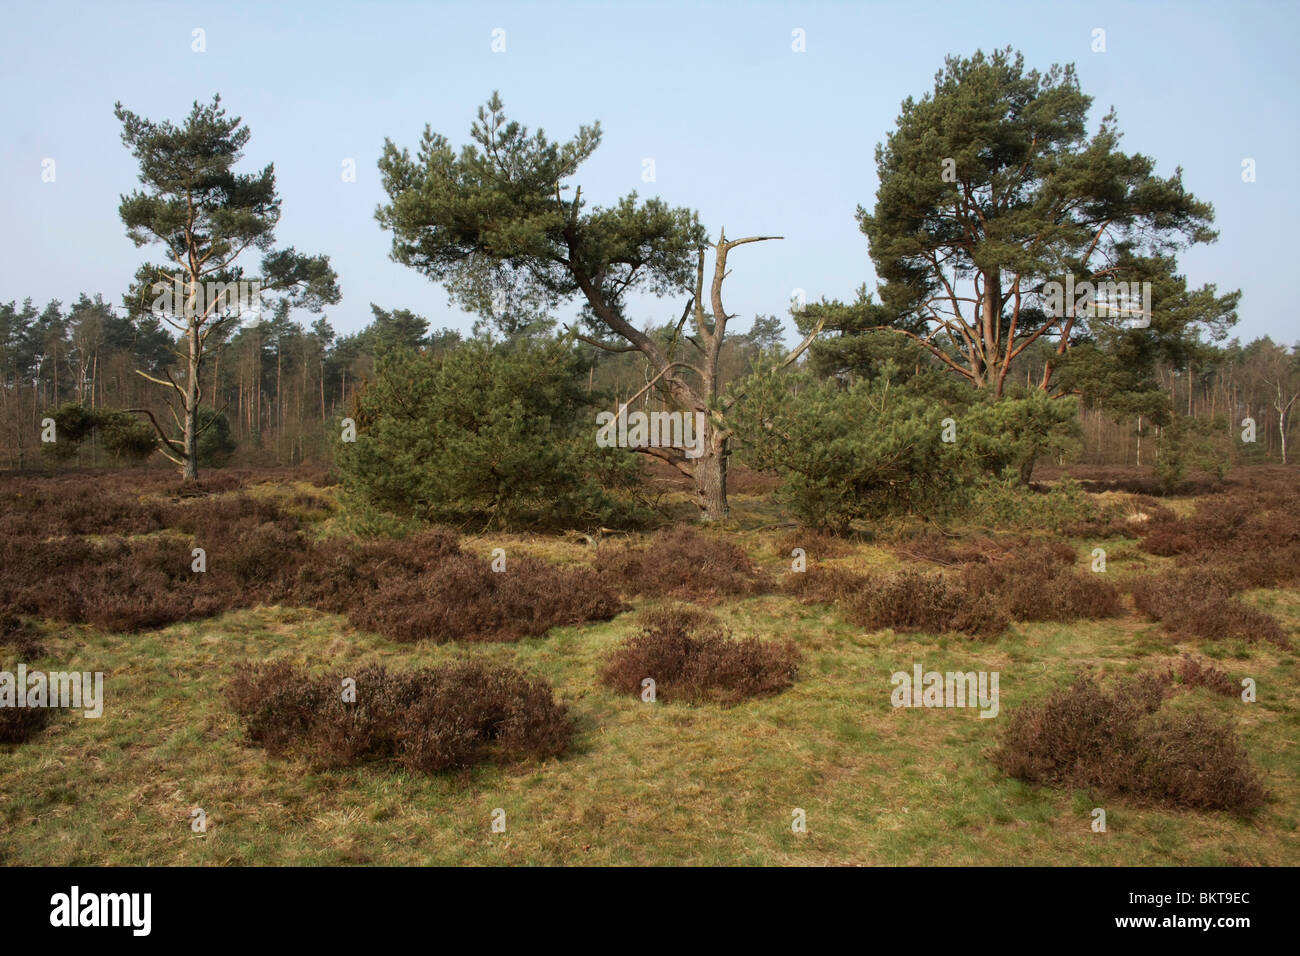 Dit Celtic field is Ã©Ã©n van de weinige goed zichtbare in Nederland. De omwalde vierkante akkers zijn zichtbaar als flauwe golvingen in de heide en de paden; Celtic Field Stock Photo